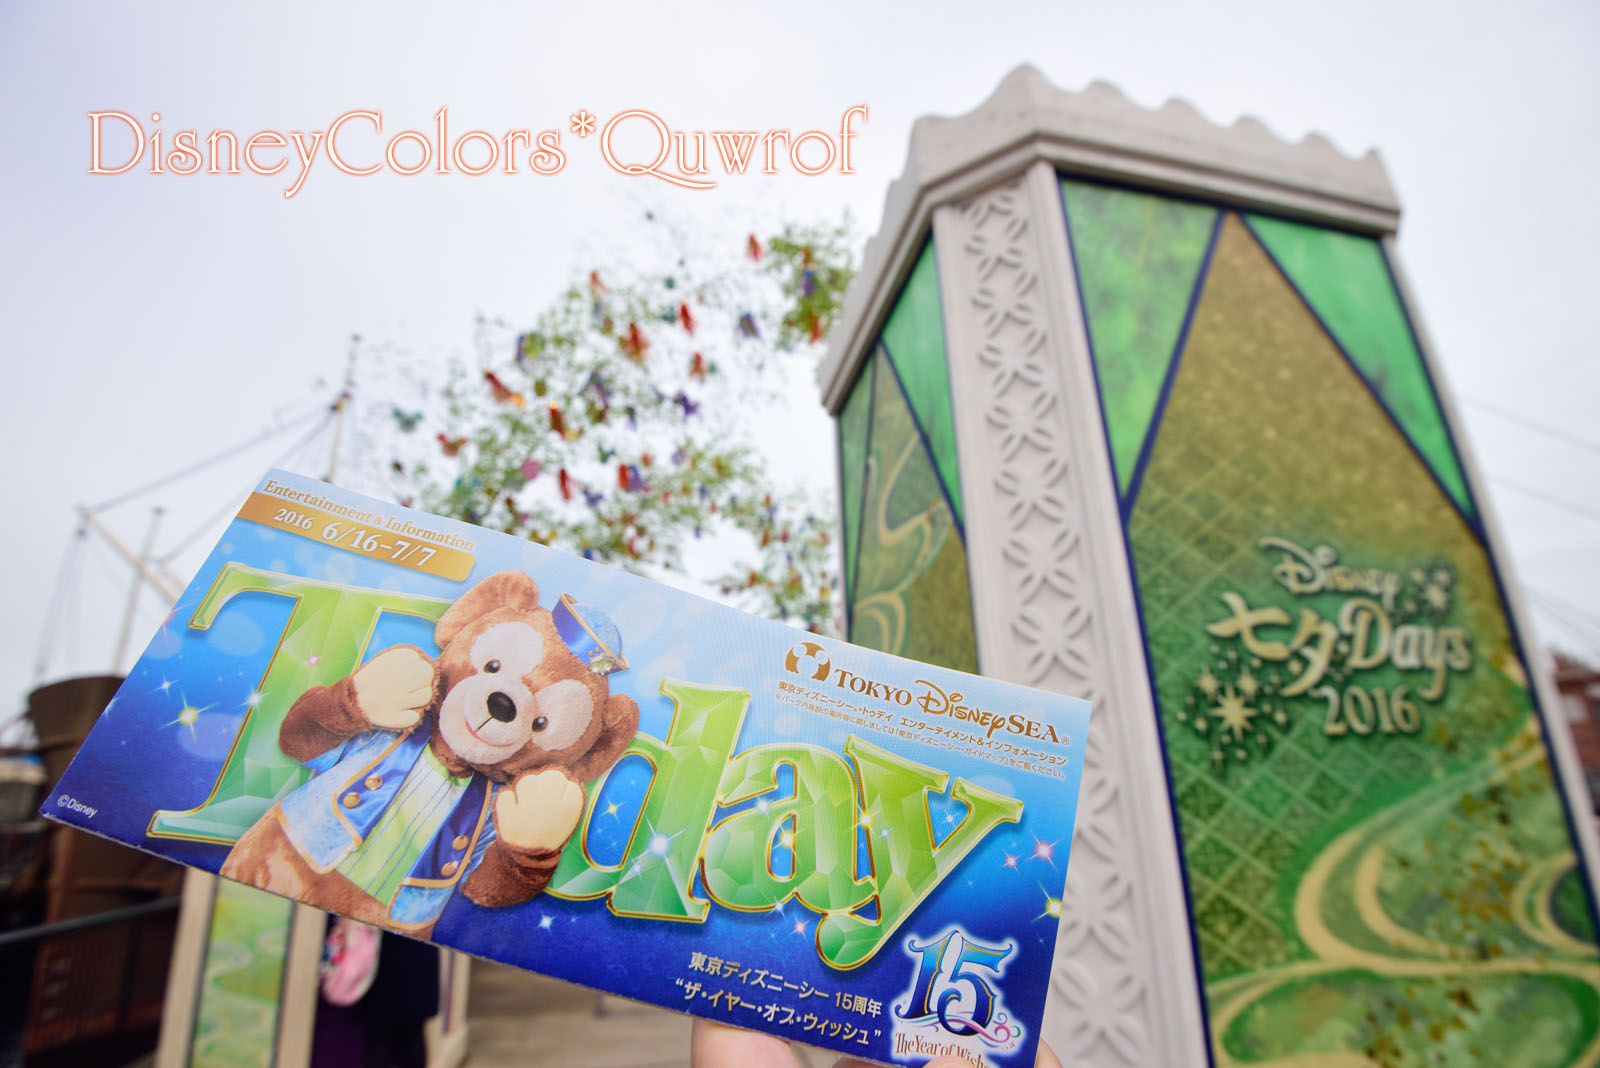 両パークで ディズニー七夕デイズ16 がスタート パークレポート16 6 16 Disney Colors Blog